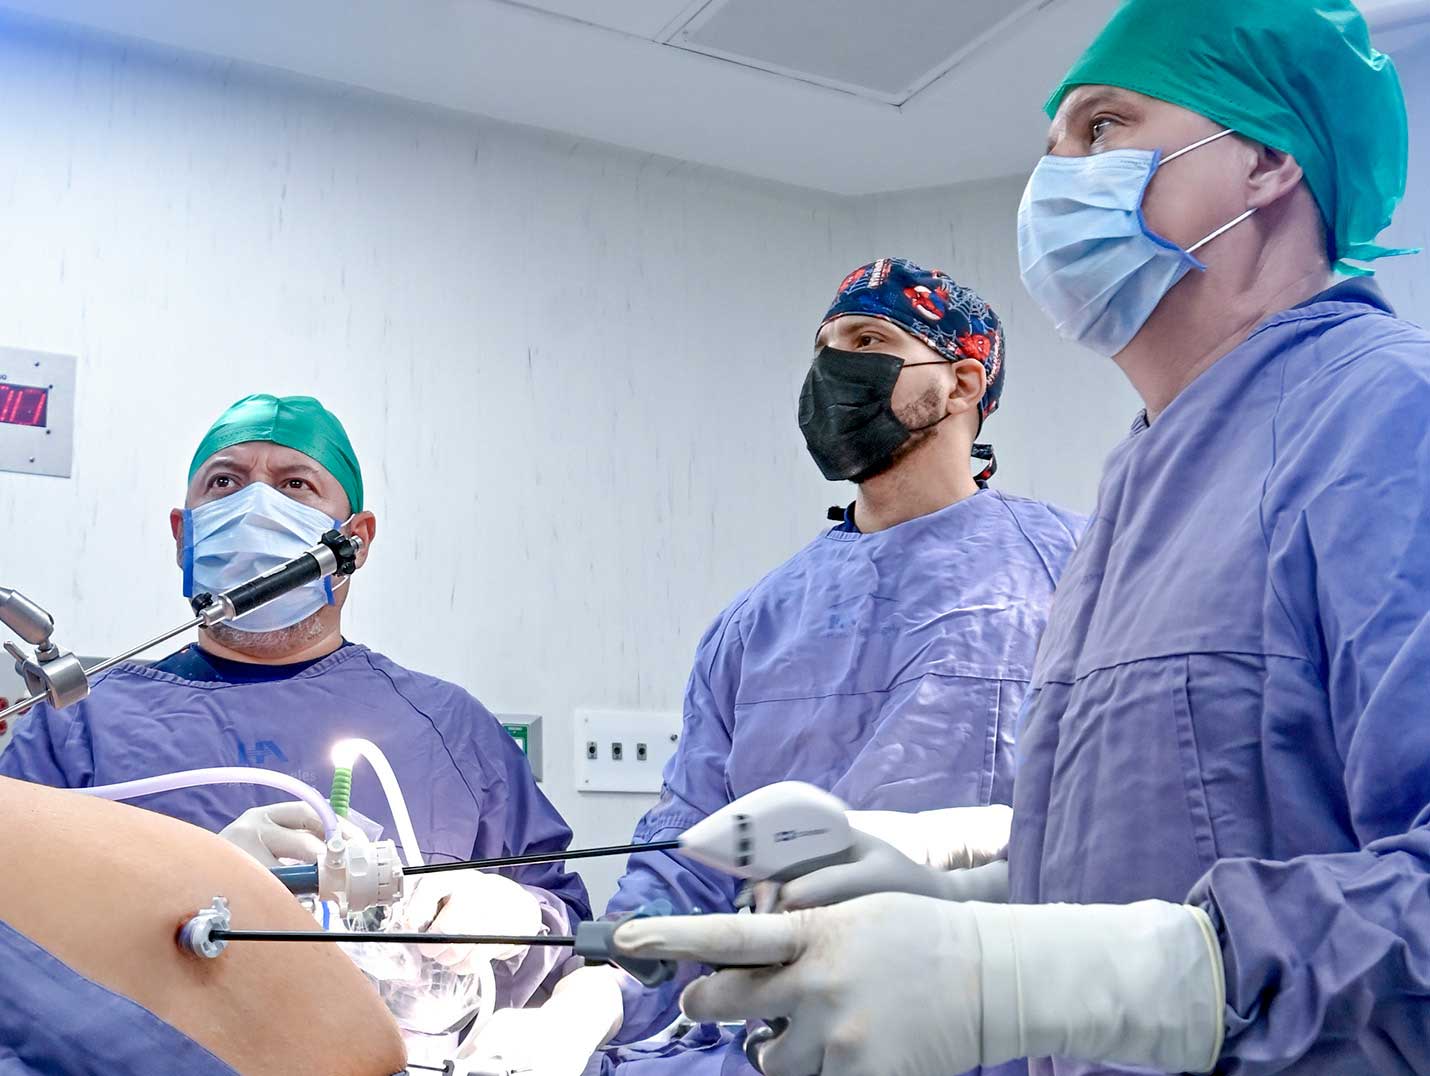 Médicos con vestimenta quirúrgica realizando una cirugía de obesidad y uno de ellos manipulando pinzas laparoscopicas.